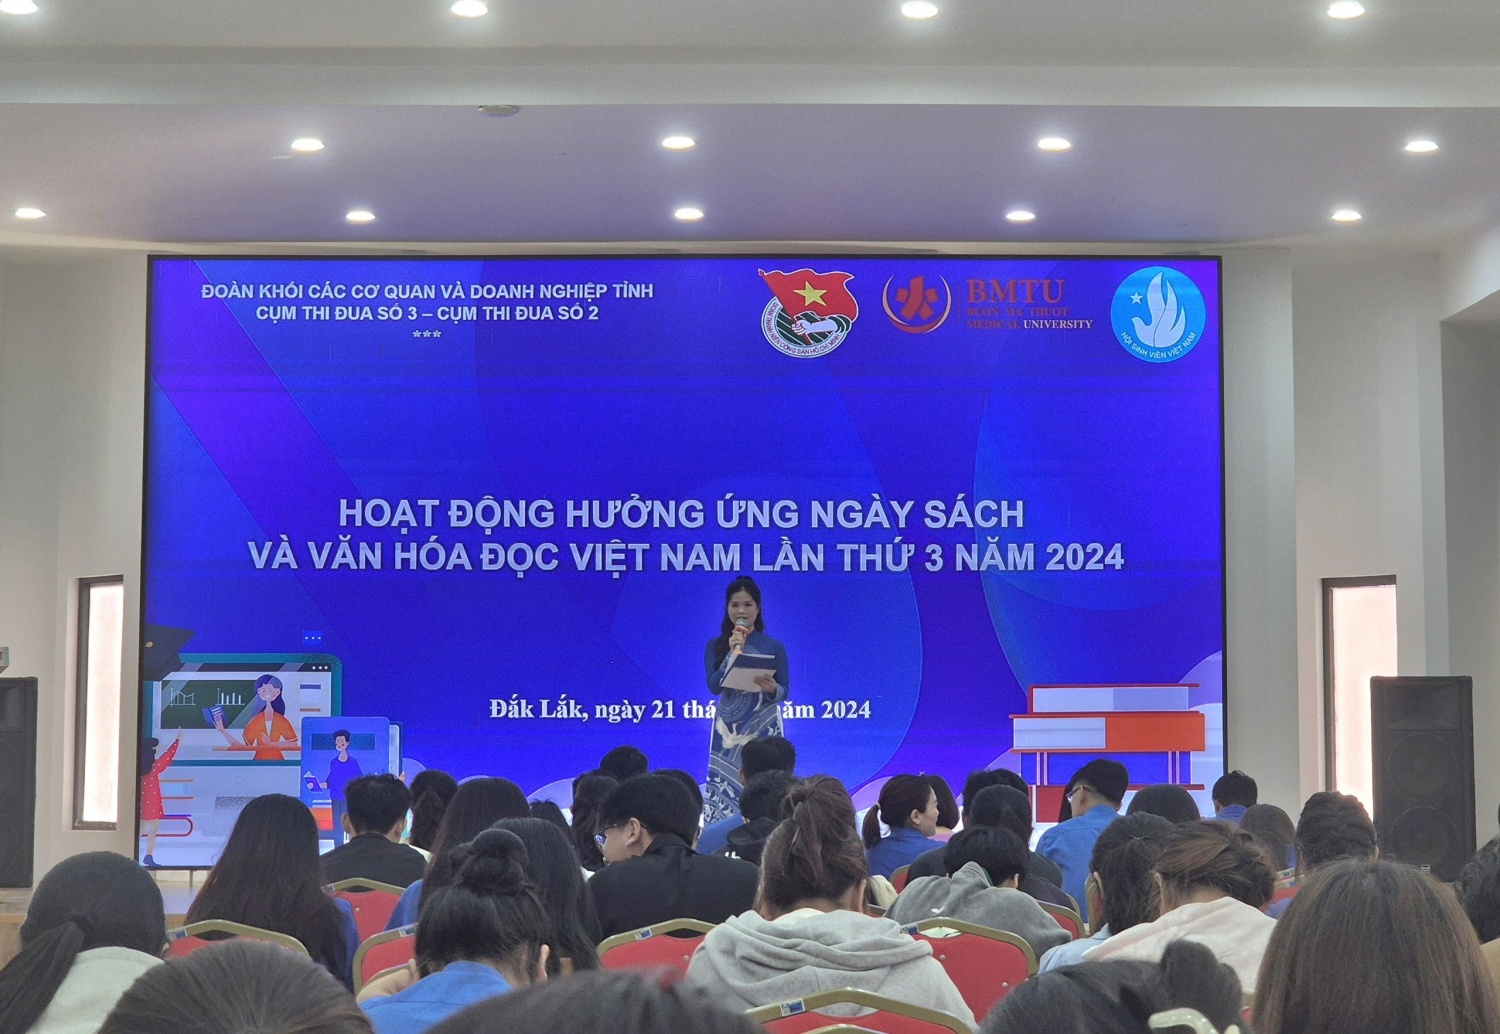 Chi đoàn Sở Công Thương hưởng ứng Ngày sách và văn hoá đọc Việt Nam lần thứ 3 năm 2024